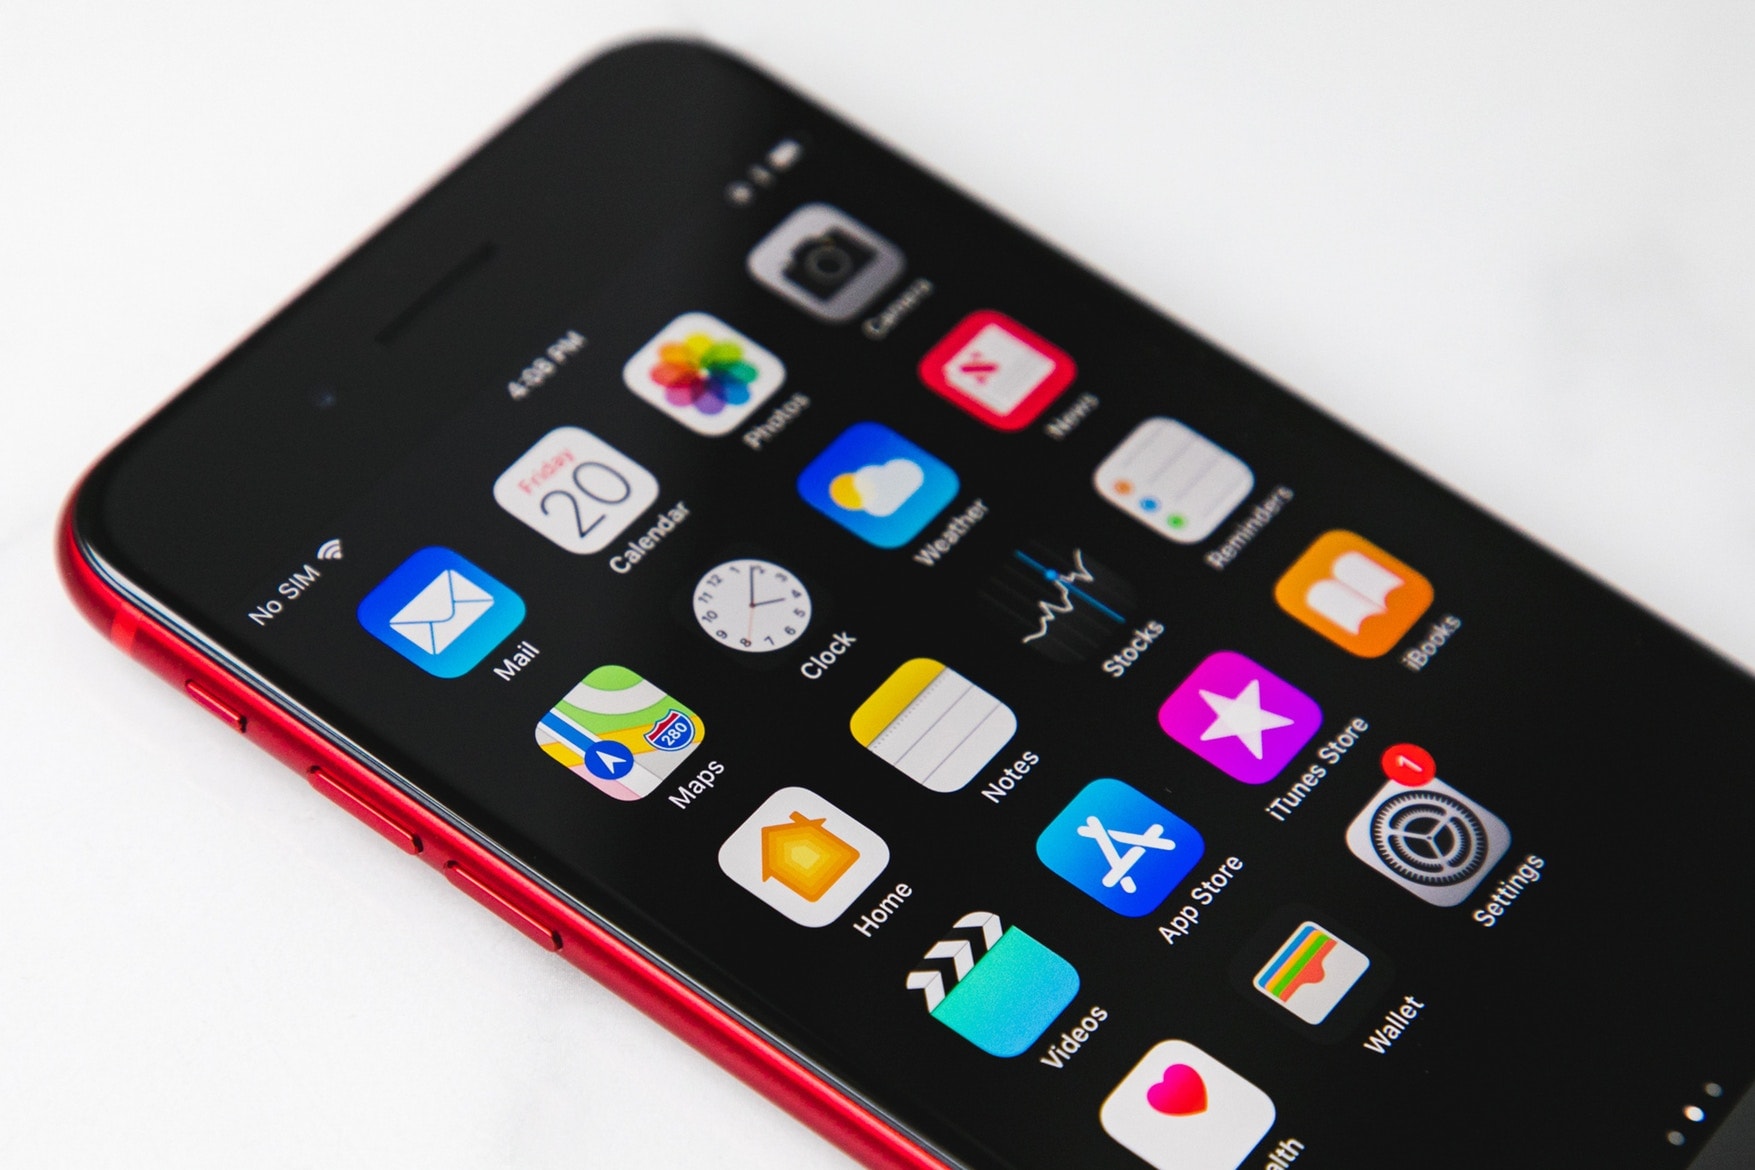 애플 x 에이즈 퇴치재단 'RED' 아이폰 8 '레드' apple iphone 8 plus productred closer look